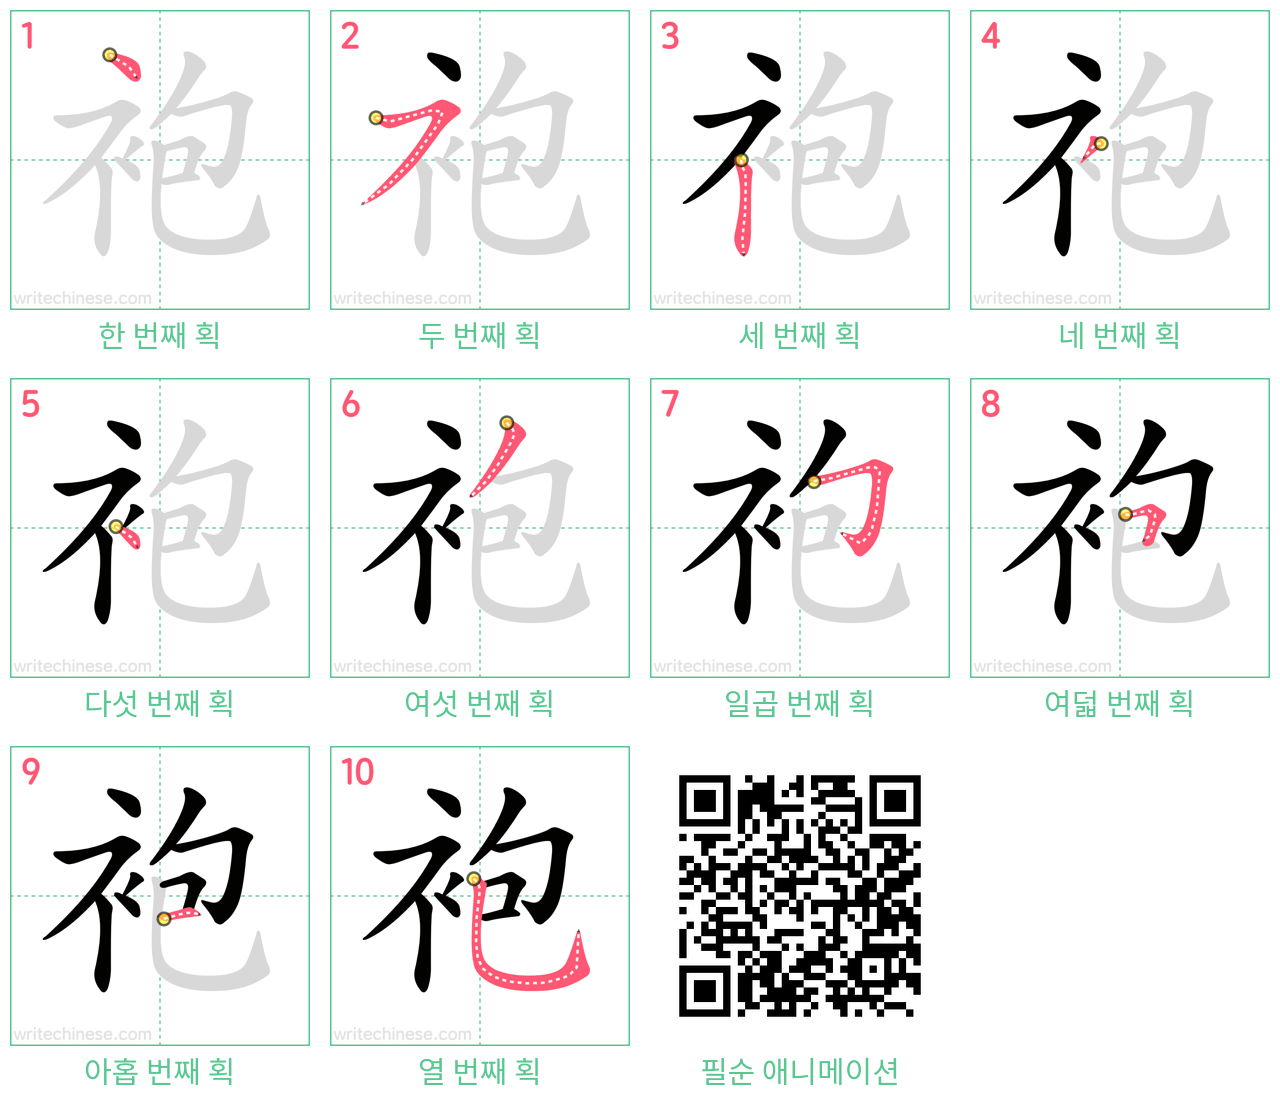 袍 step-by-step stroke order diagrams